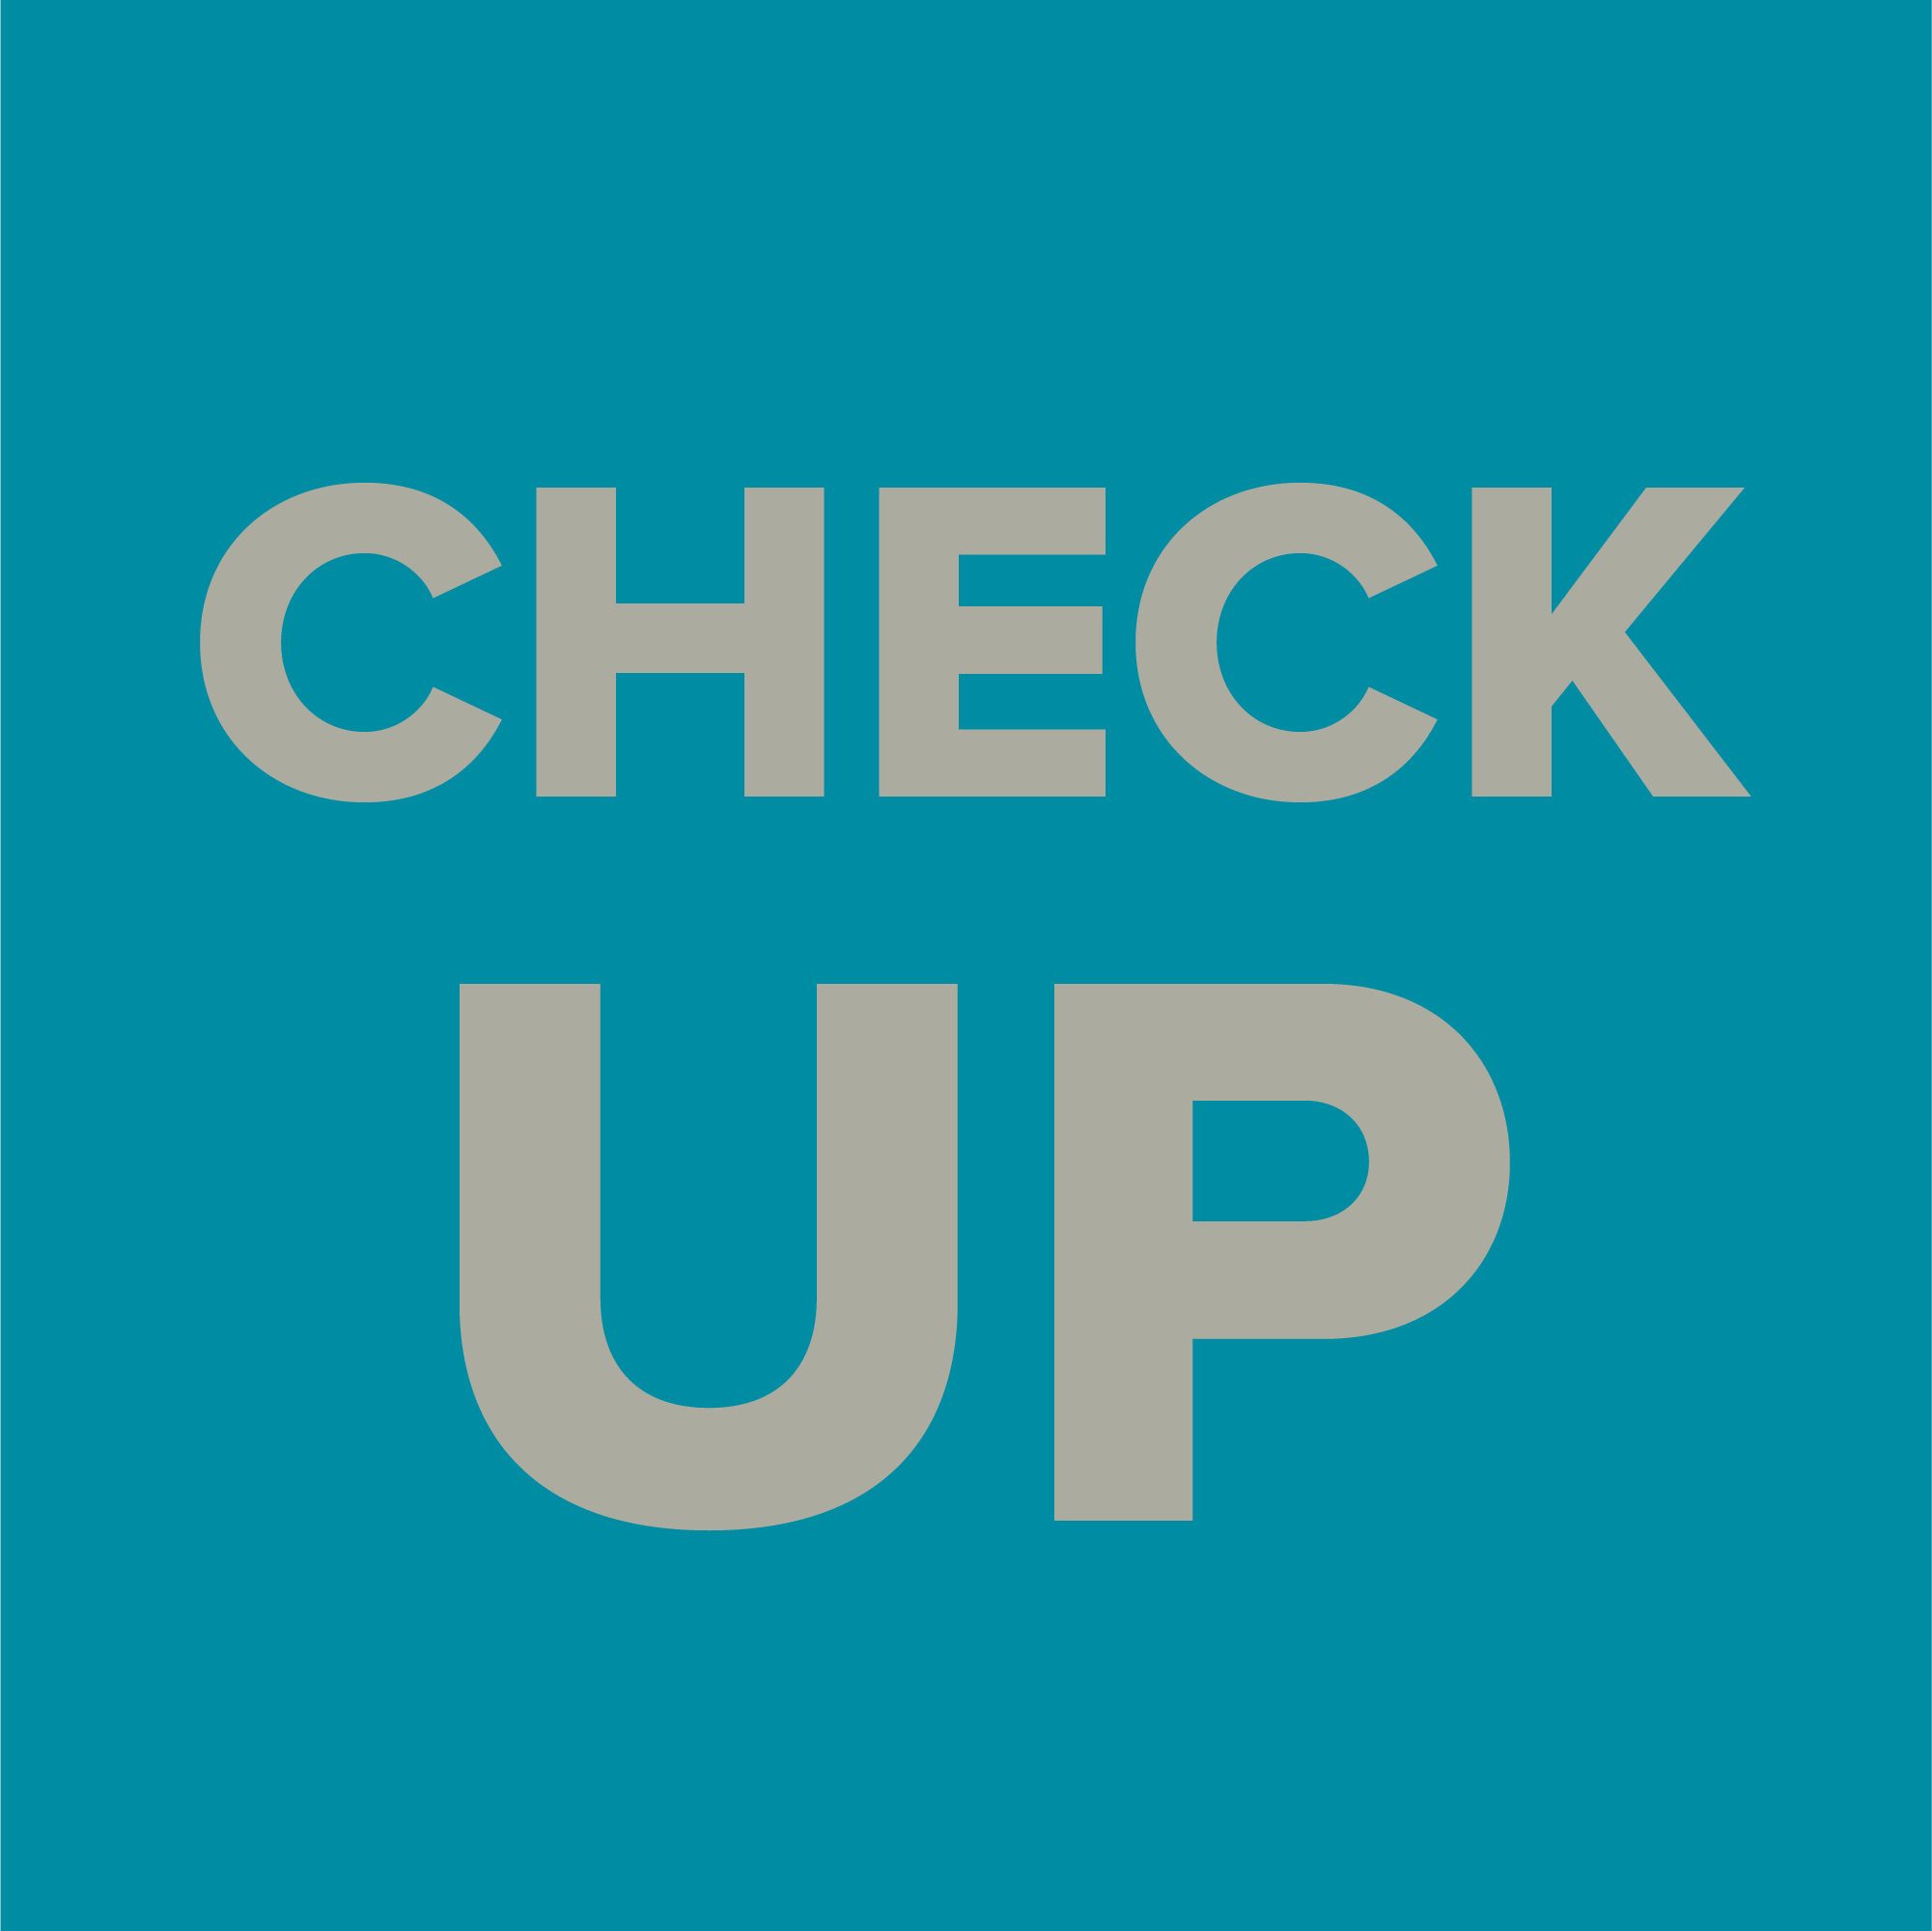 Dieses Bild enthält den Text "Check-Up" (deutsch: "Überprüfung") und soll anschaulich für die Suchmaschinenoptimierung bei der Webagentur Uppertree sein.